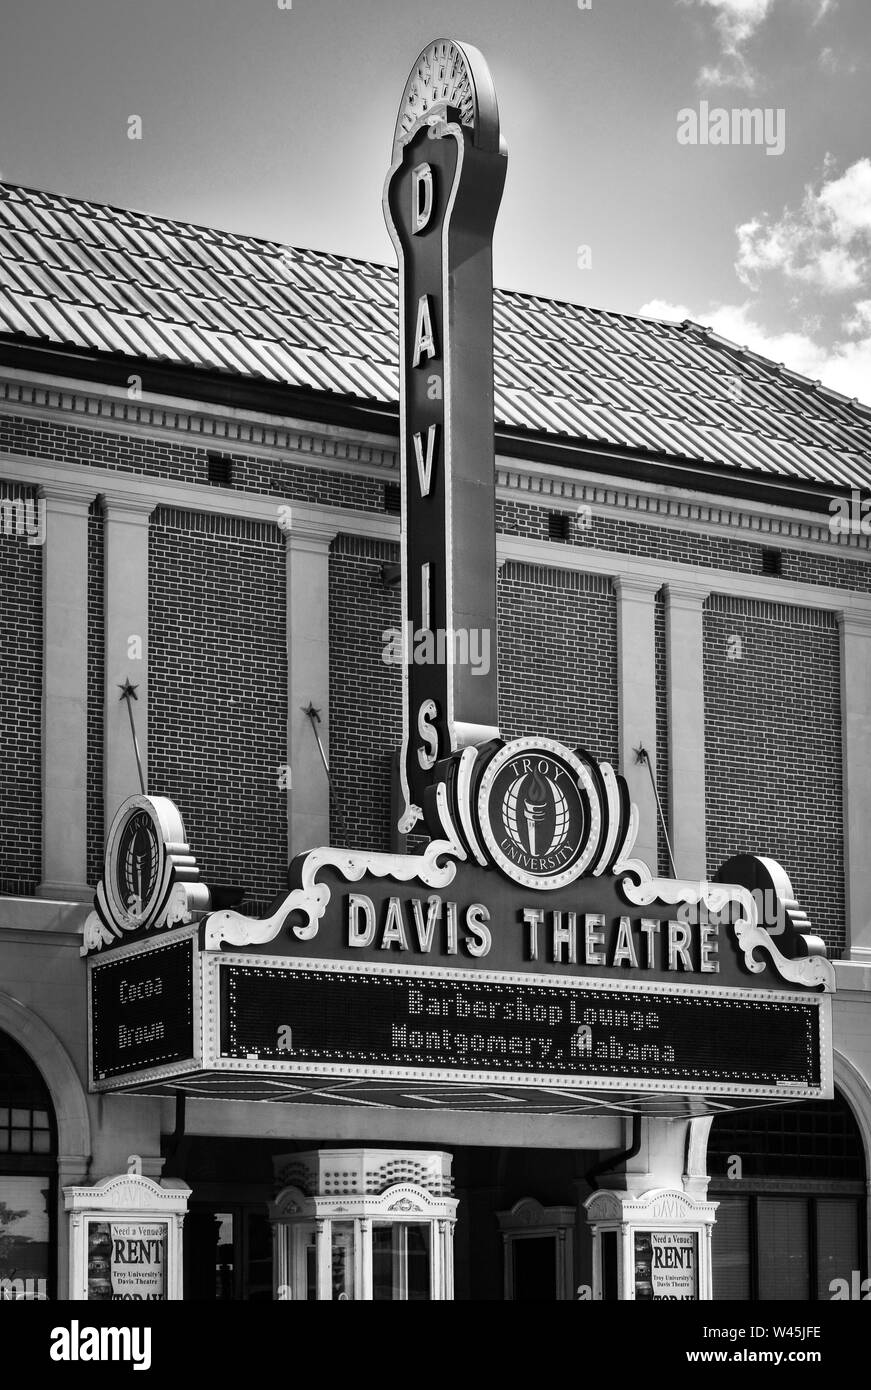 Un chapiteau vintage et landmark tower pour le Davis théâtre, un théâtre multi-usage historique au centre-ville de Montgomery, AL, États-Unis d'Amérique, en noir et blanc Banque D'Images